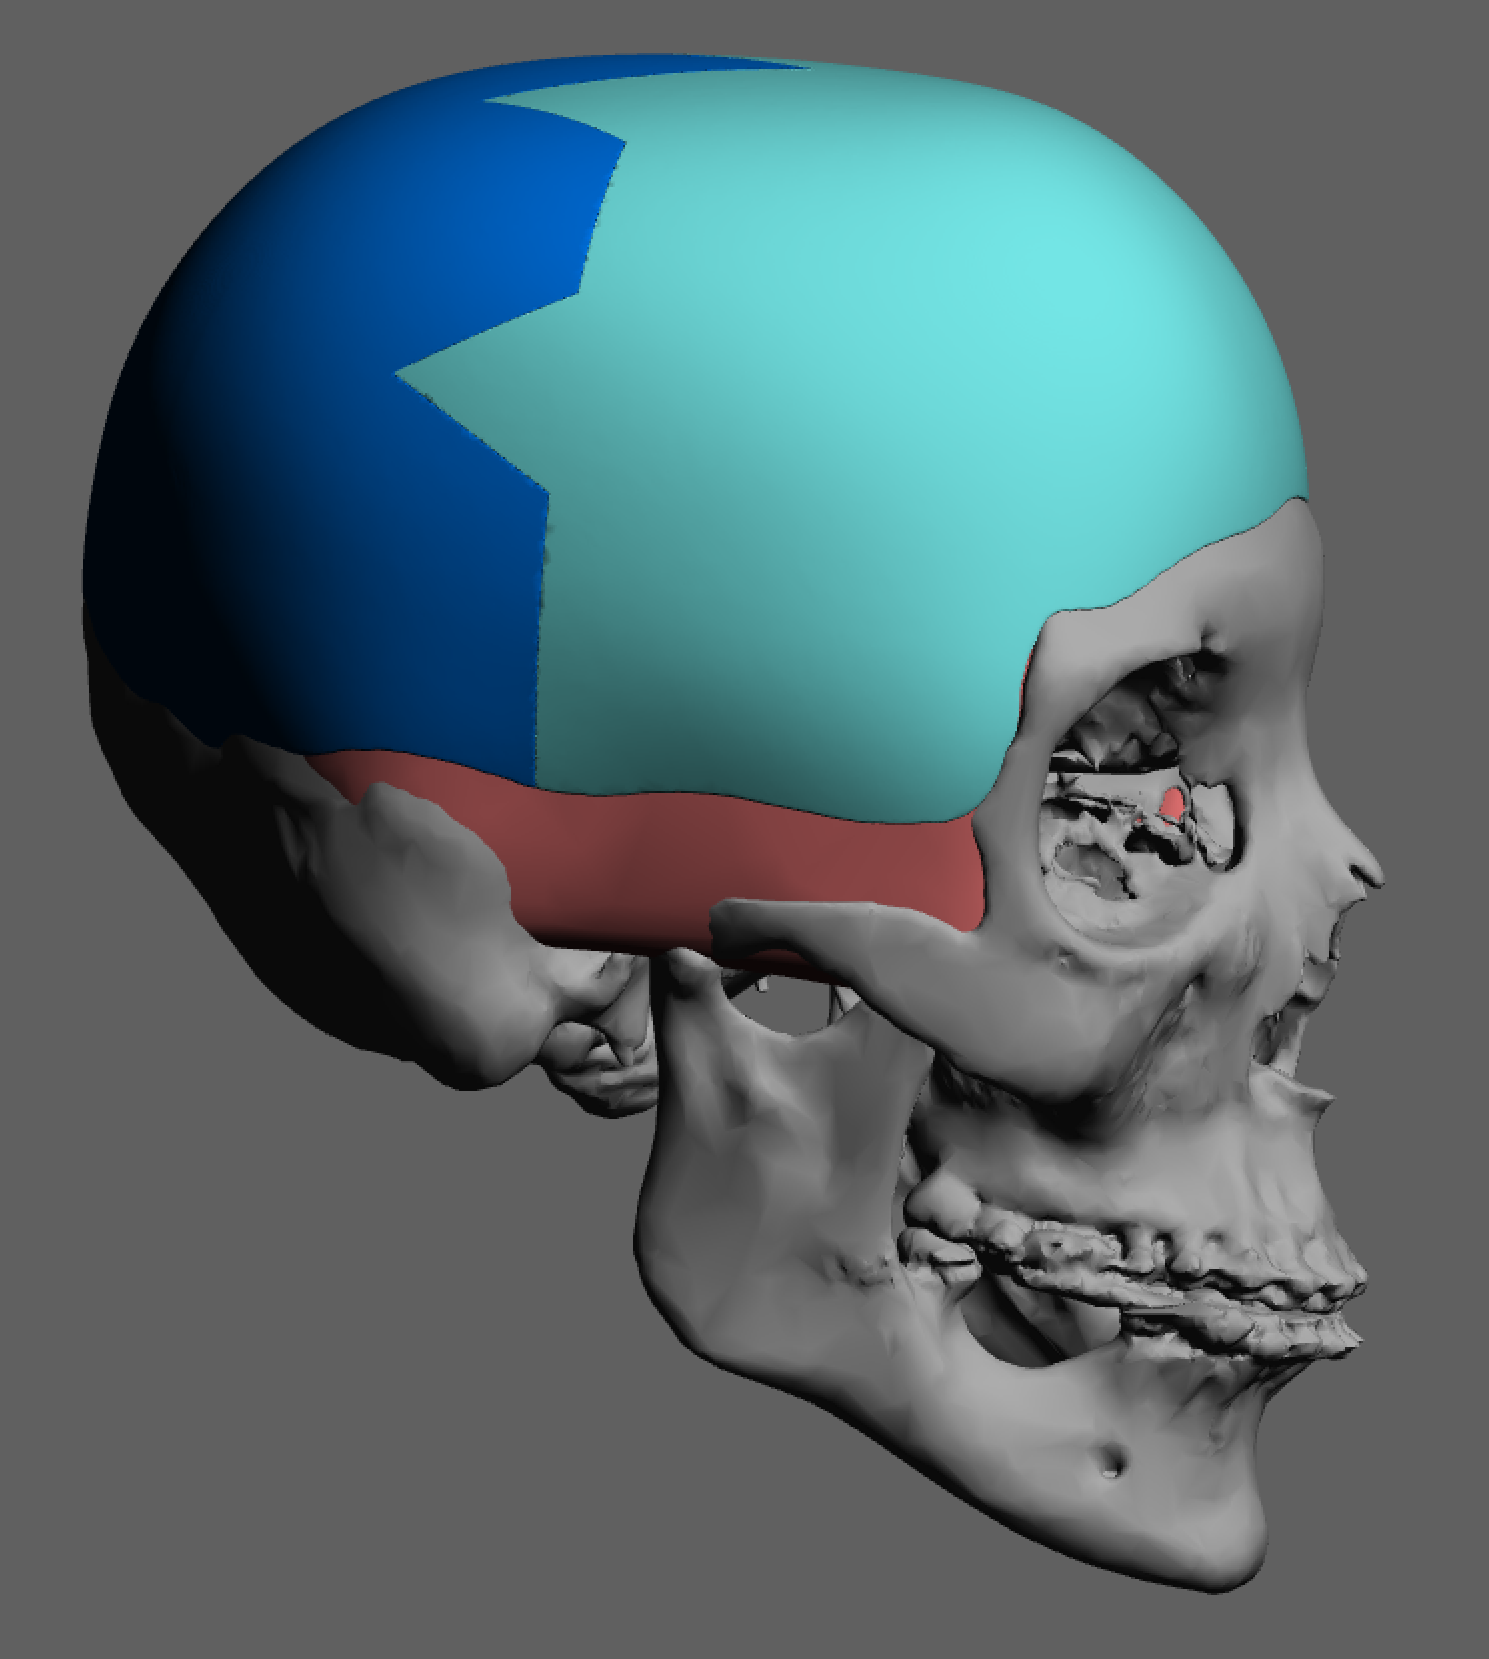 Aesthetic Skull Reshaping